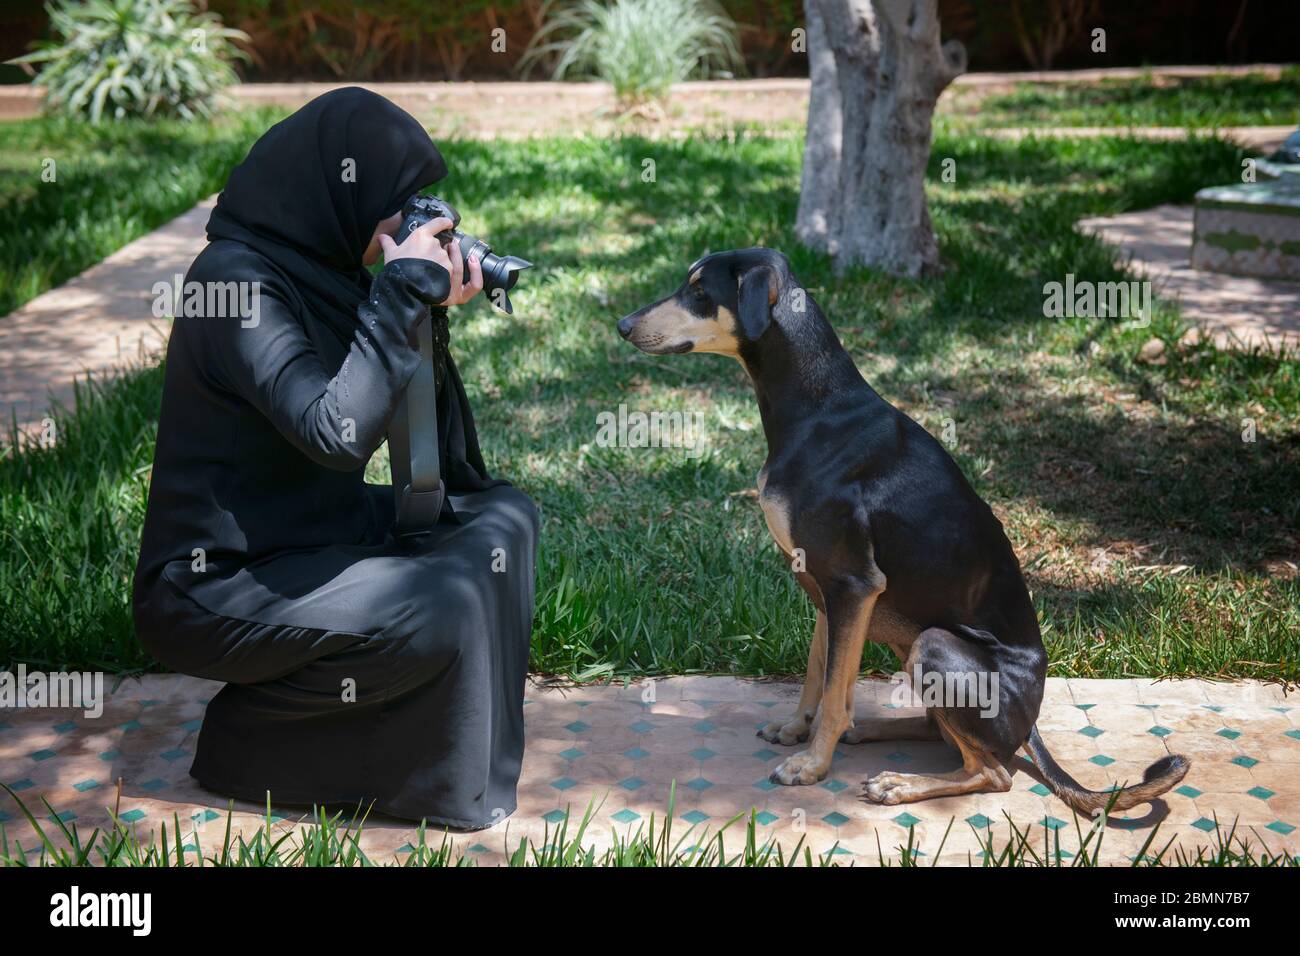 Hermosa mujer árabe marroquí musulmana con el tradicional niqab negro, fotografías un obediente joven perro Sloughi (galgos árabes). Foto de stock